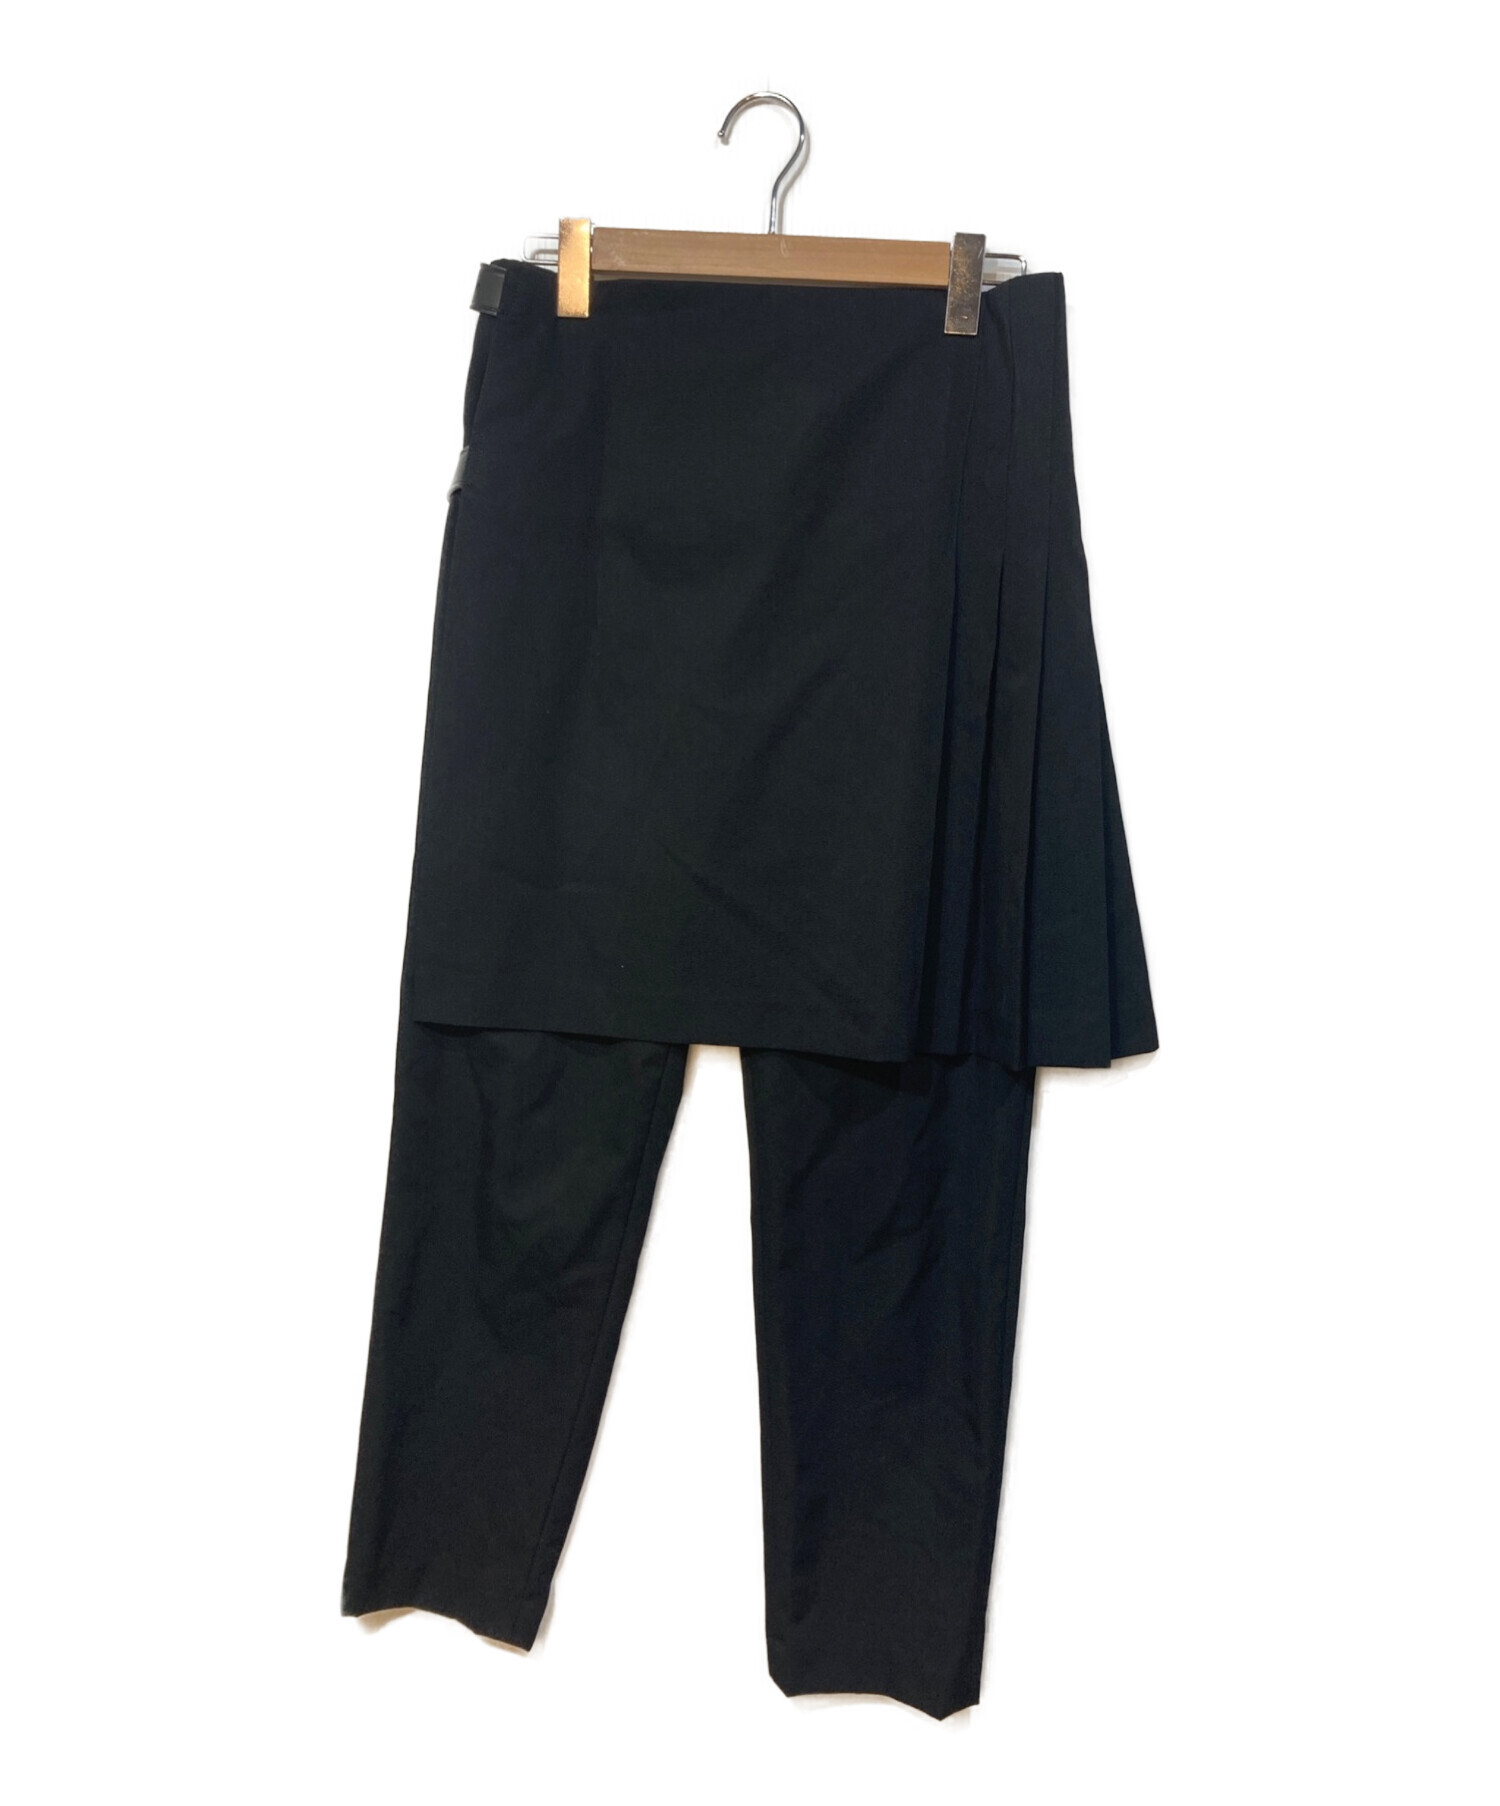 COMME des GARCONS (コムデギャルソン) プリーツスカートベルトパンツ ブラック サイズ:M